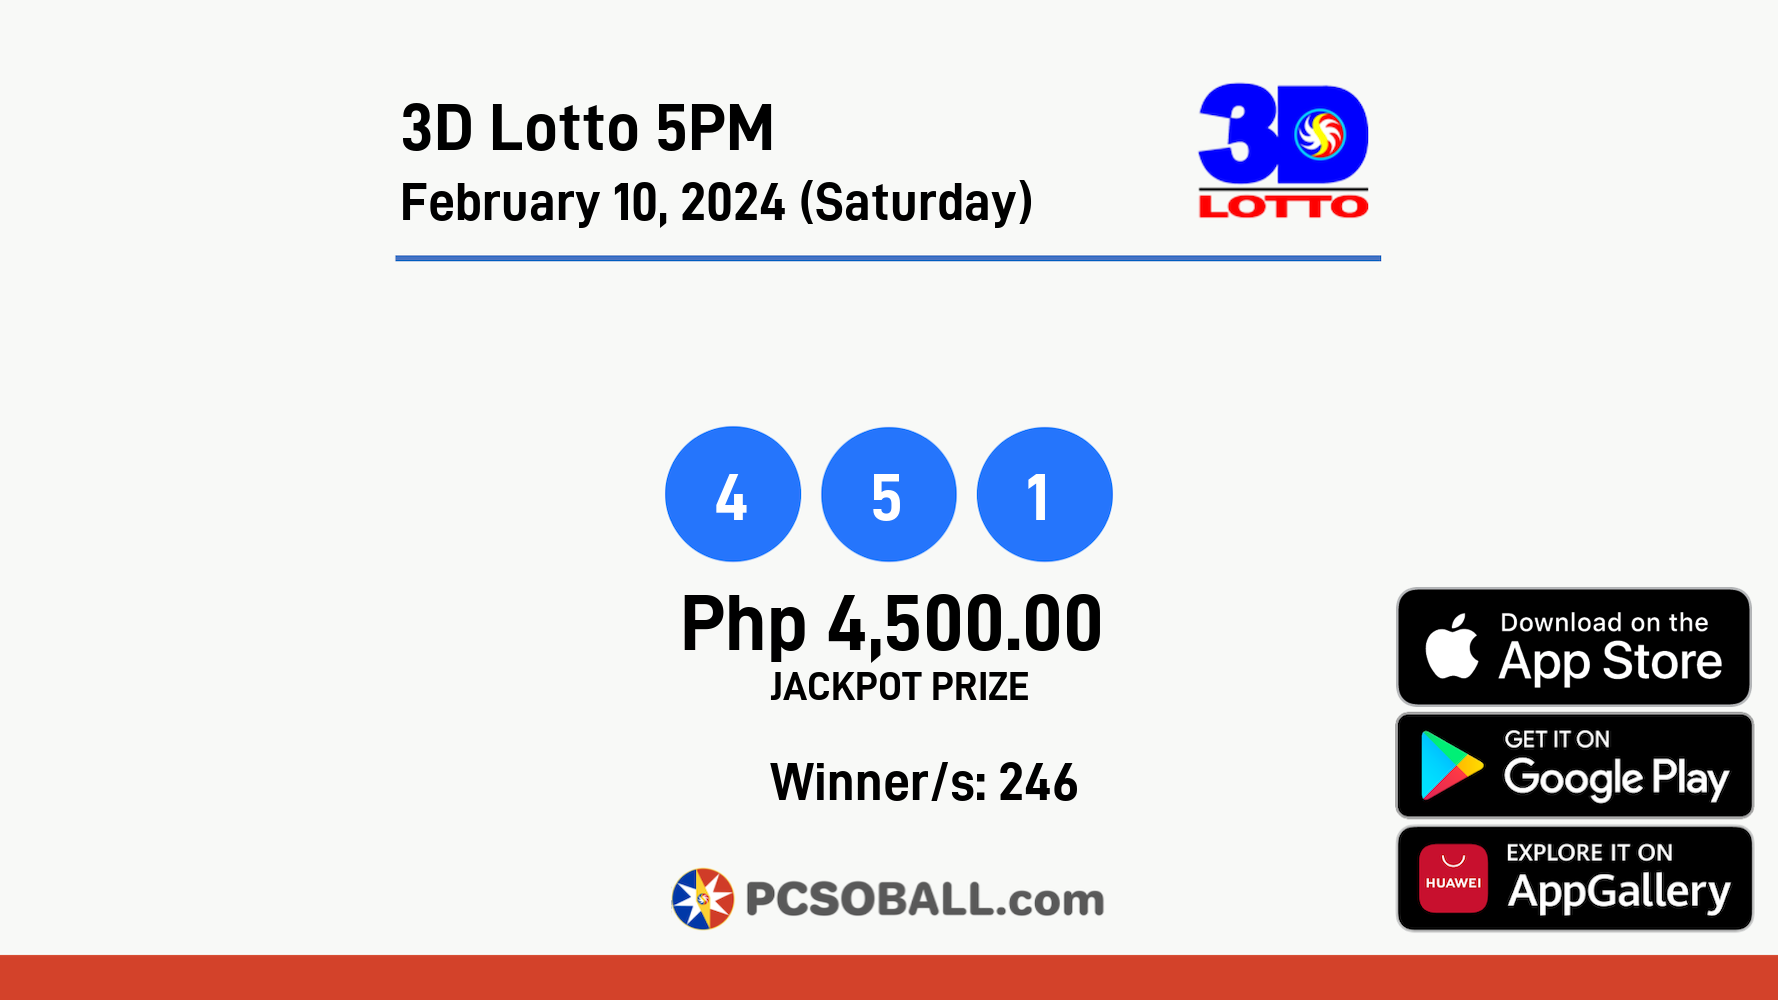 3D Lotto 5PM February 10, 2024 (Saturday) Result